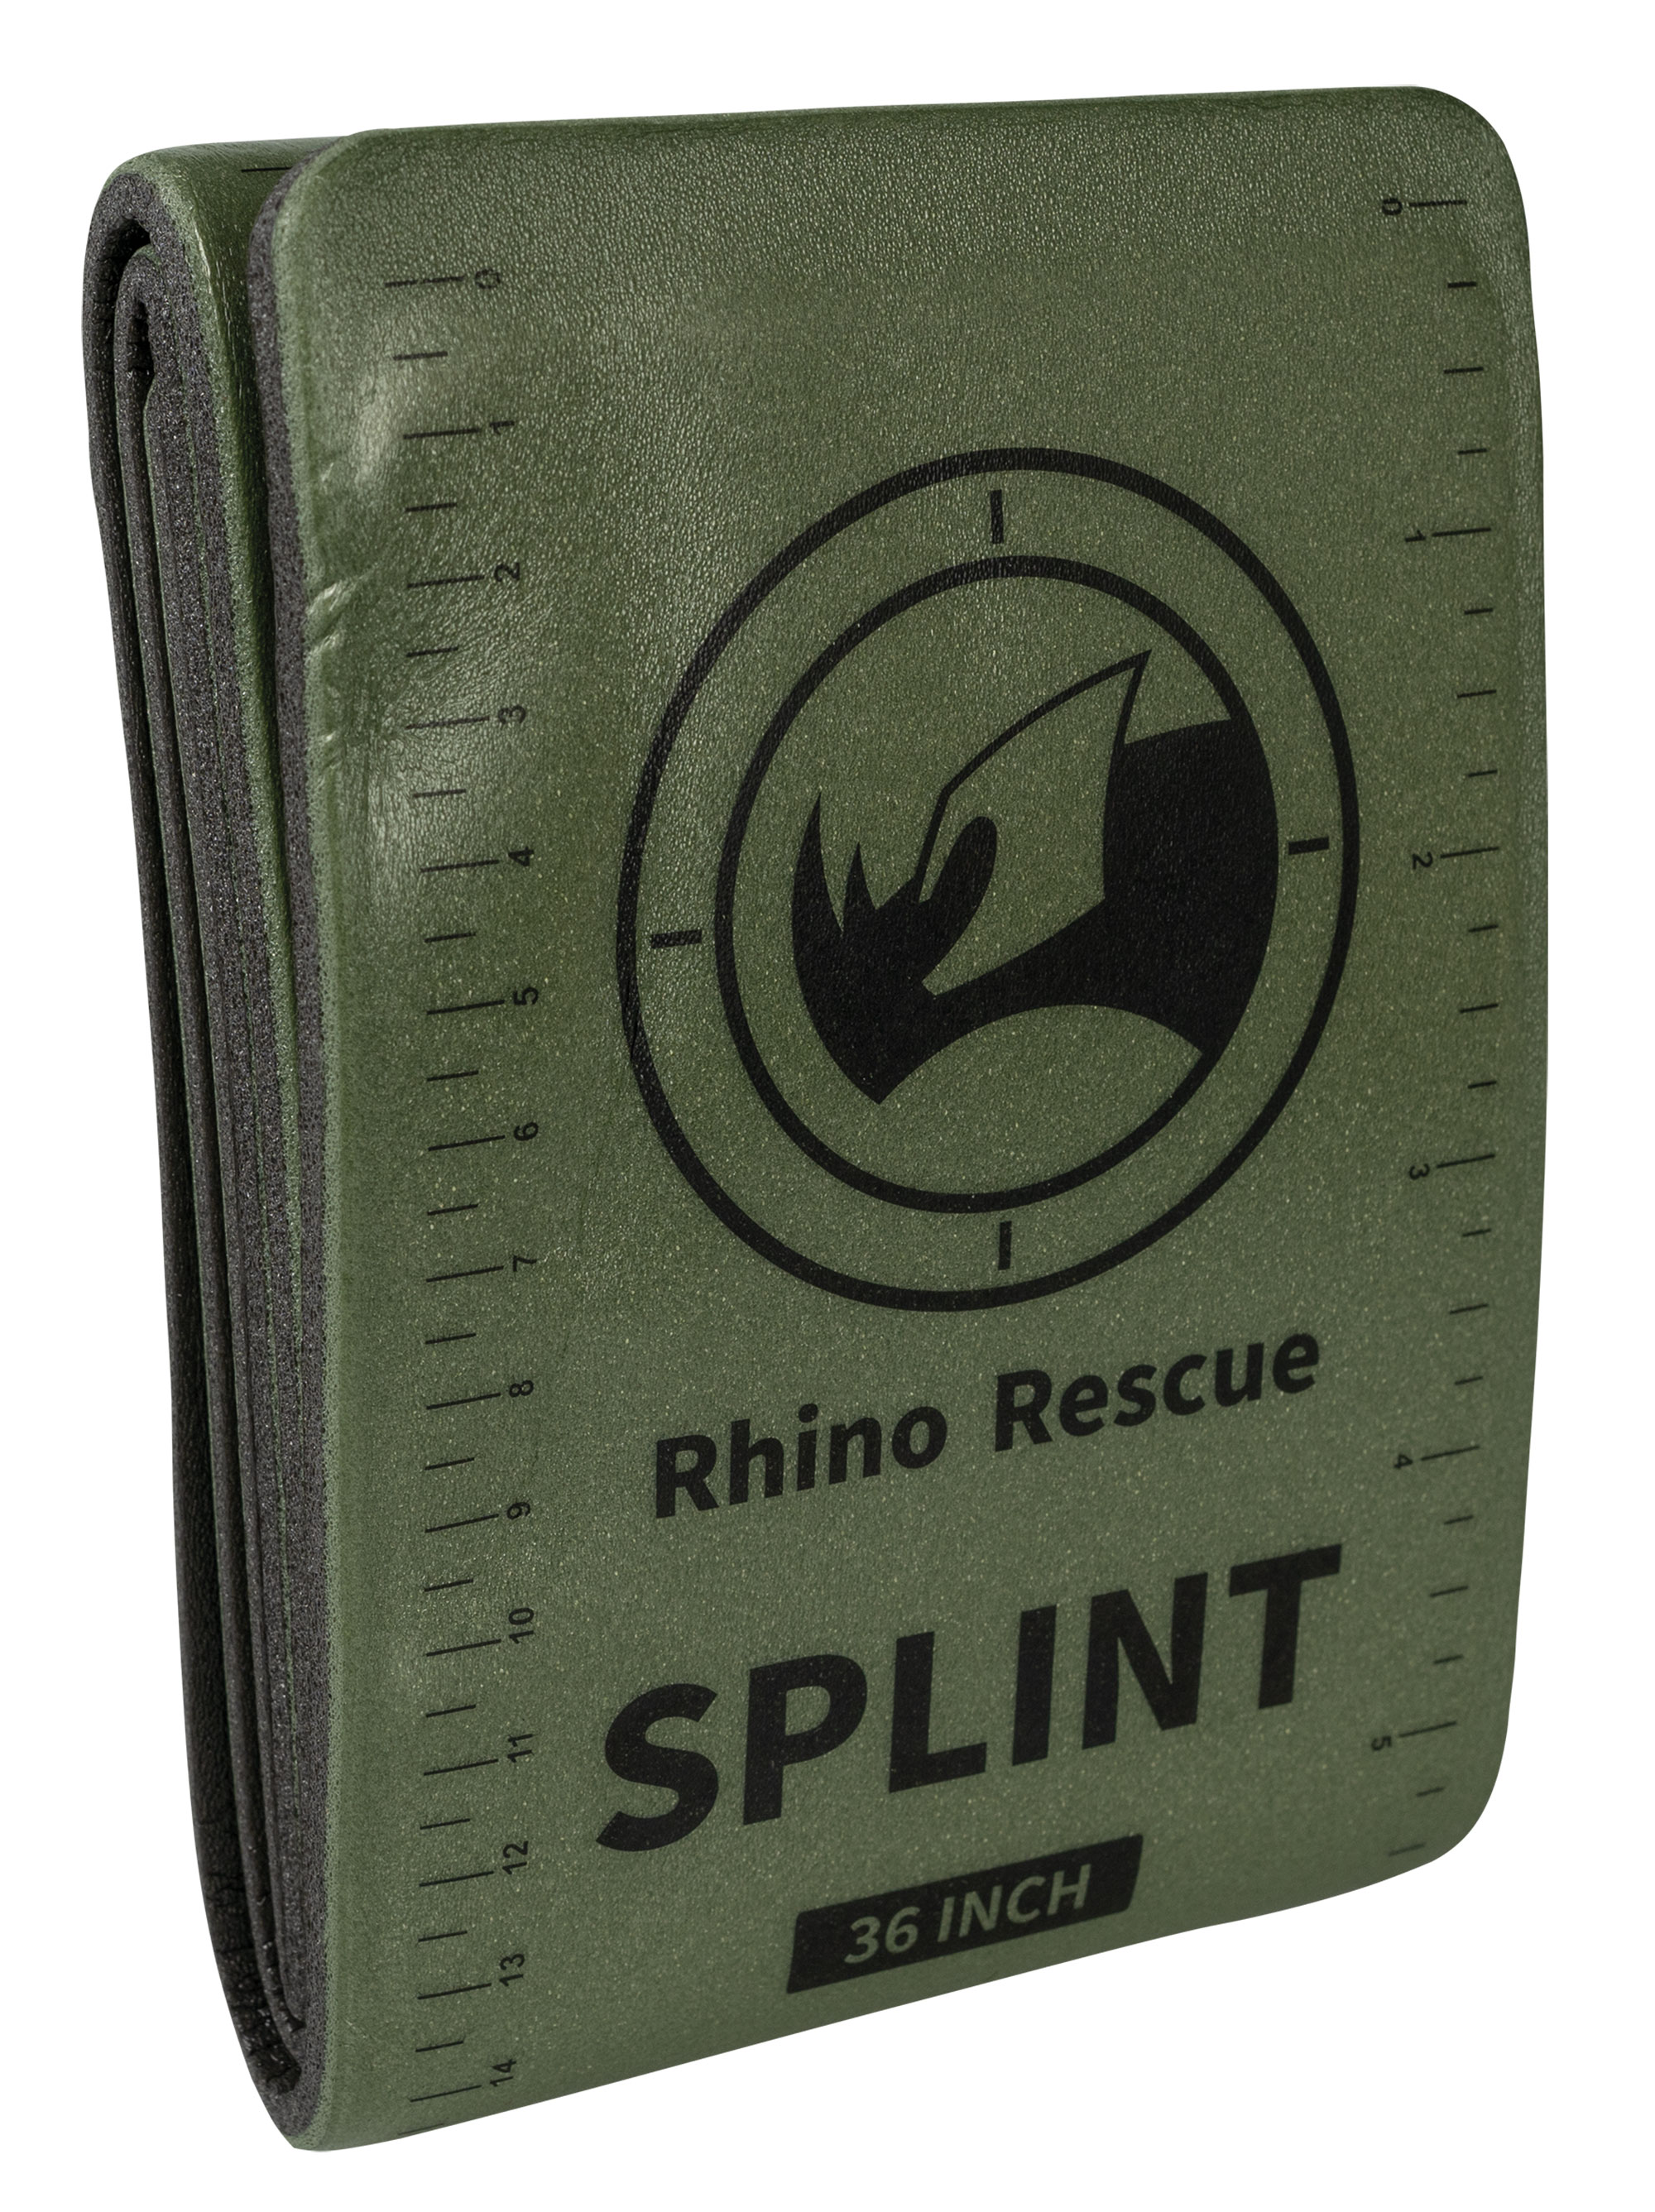 https://www.recon-company.com/media/image/69/45/c8/rhino-rescue-splint-universalschiene-36-inch-oliv_698043_1.jpg